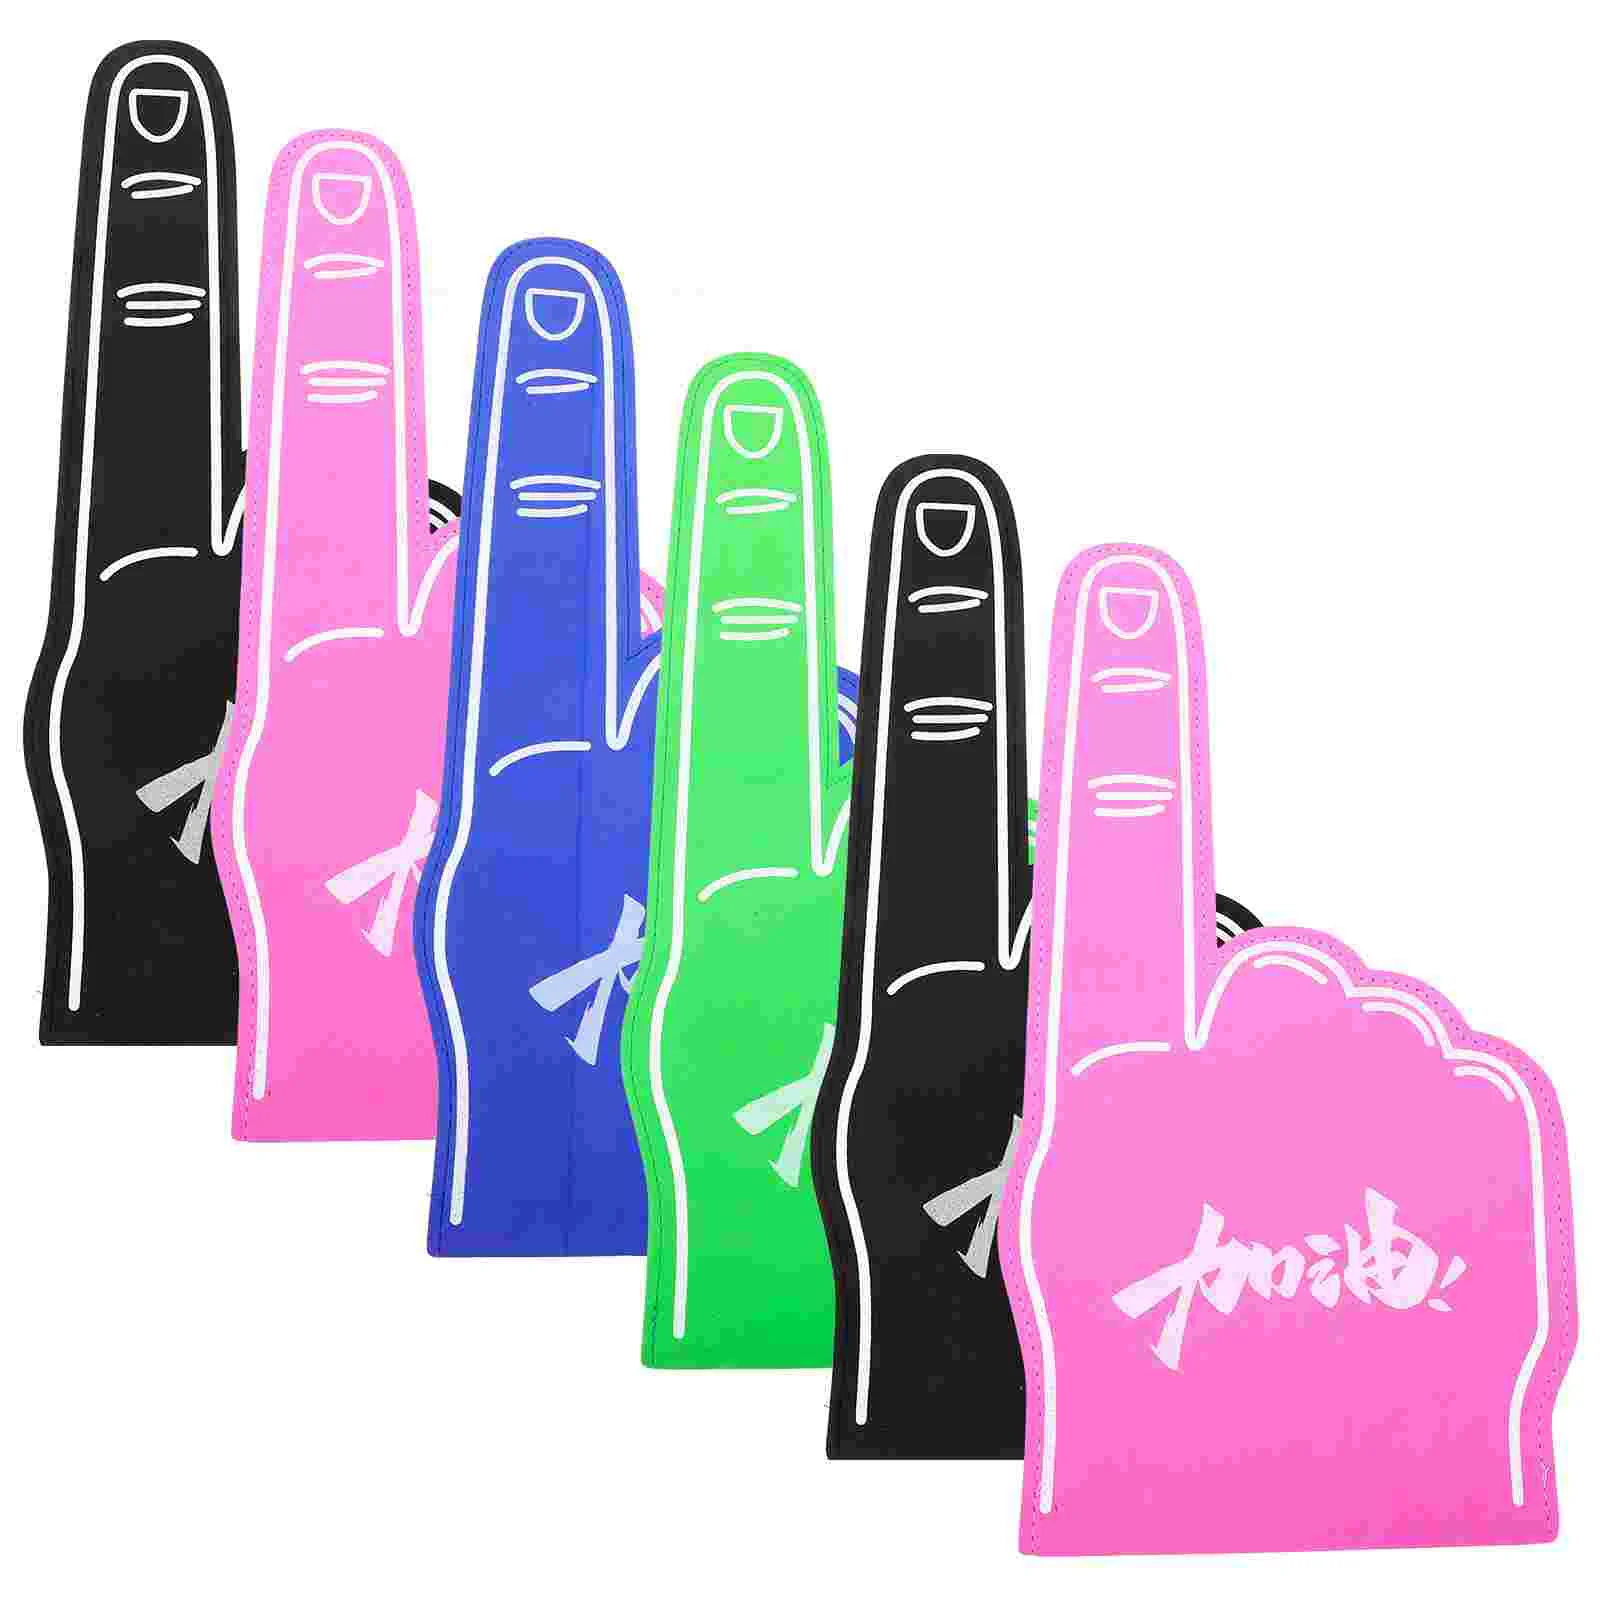 6шт пальцев для рук на все случаи жизни Помпон для черлидинга для спорта Захватывающие цвета Легкая атлетика Местные мероприятия Игры Изображение 0